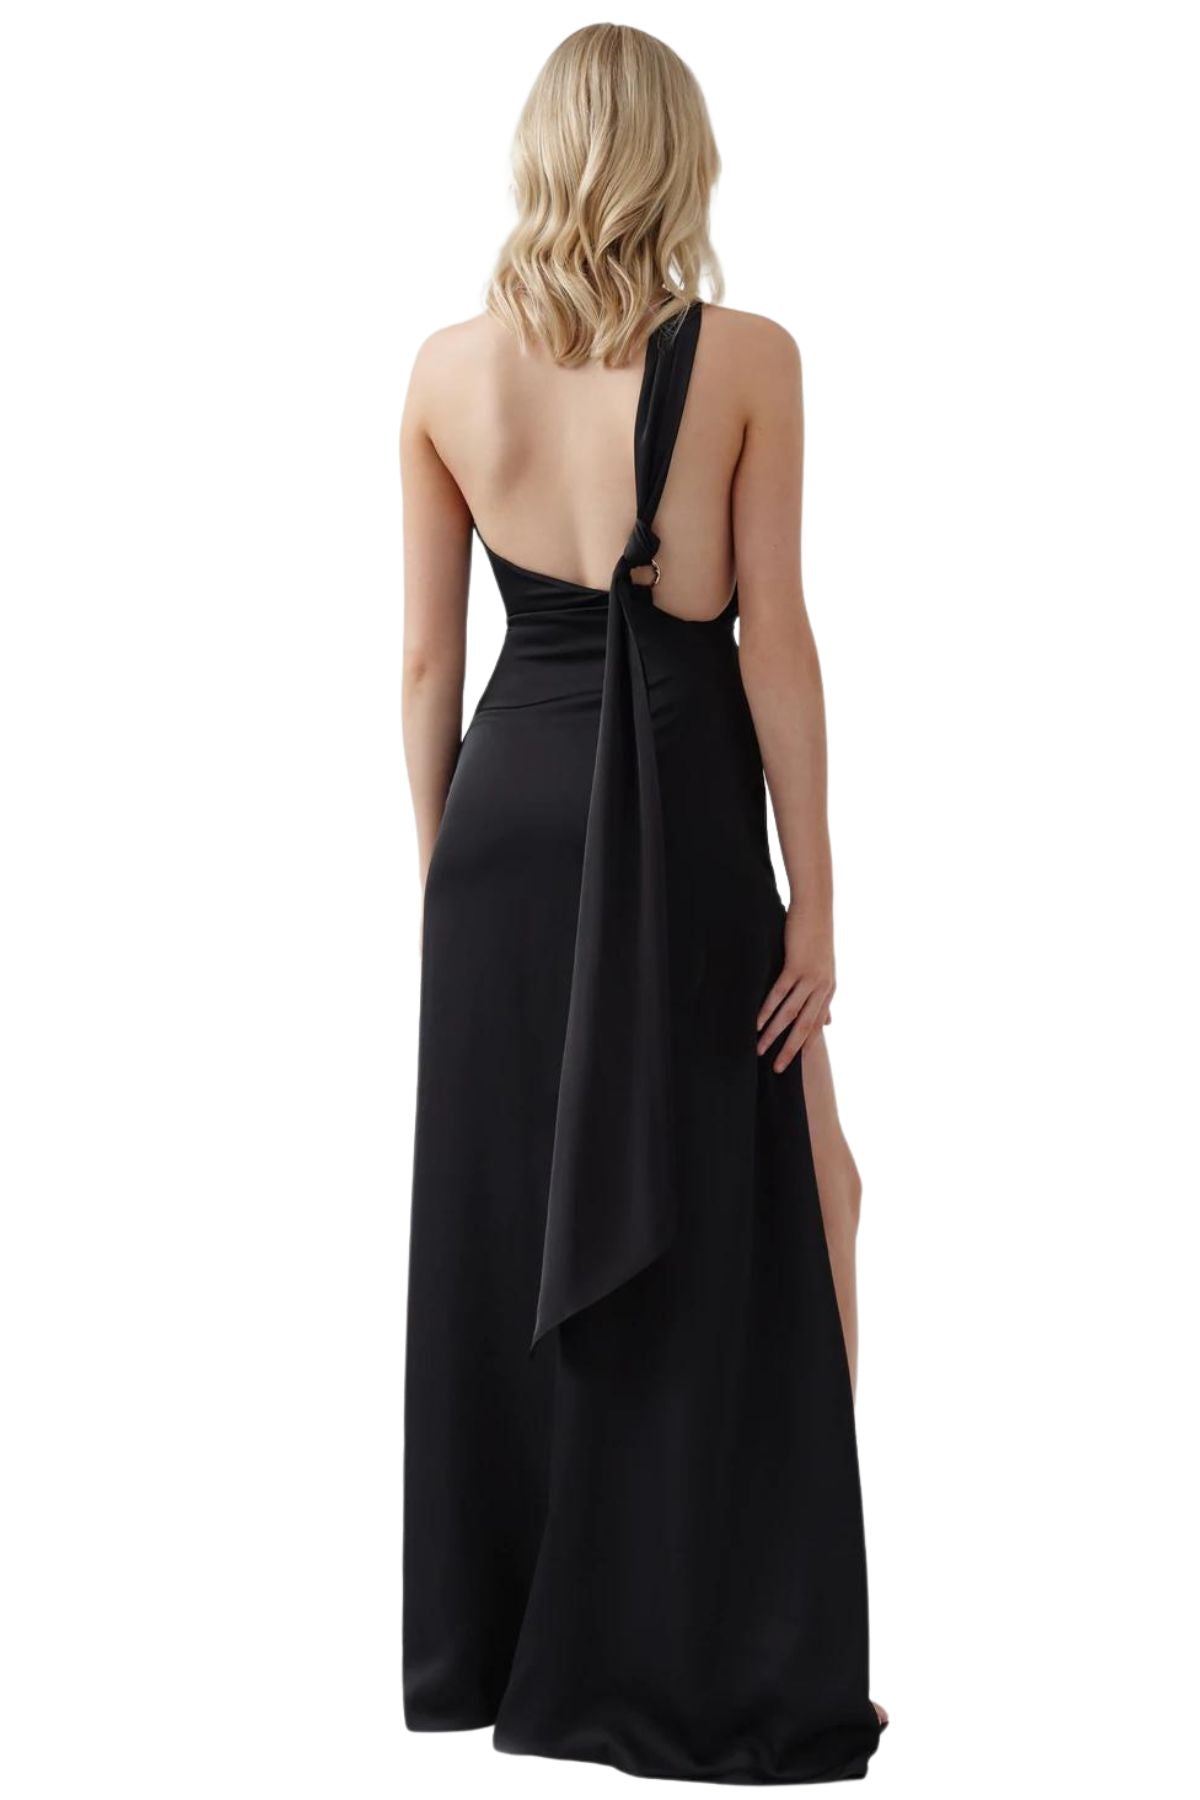 Lexi LEXI Chianti Dress (Black) - RRP $379 - 3_35272903-431d-4d99-b384-b4f8da2db383.jpg